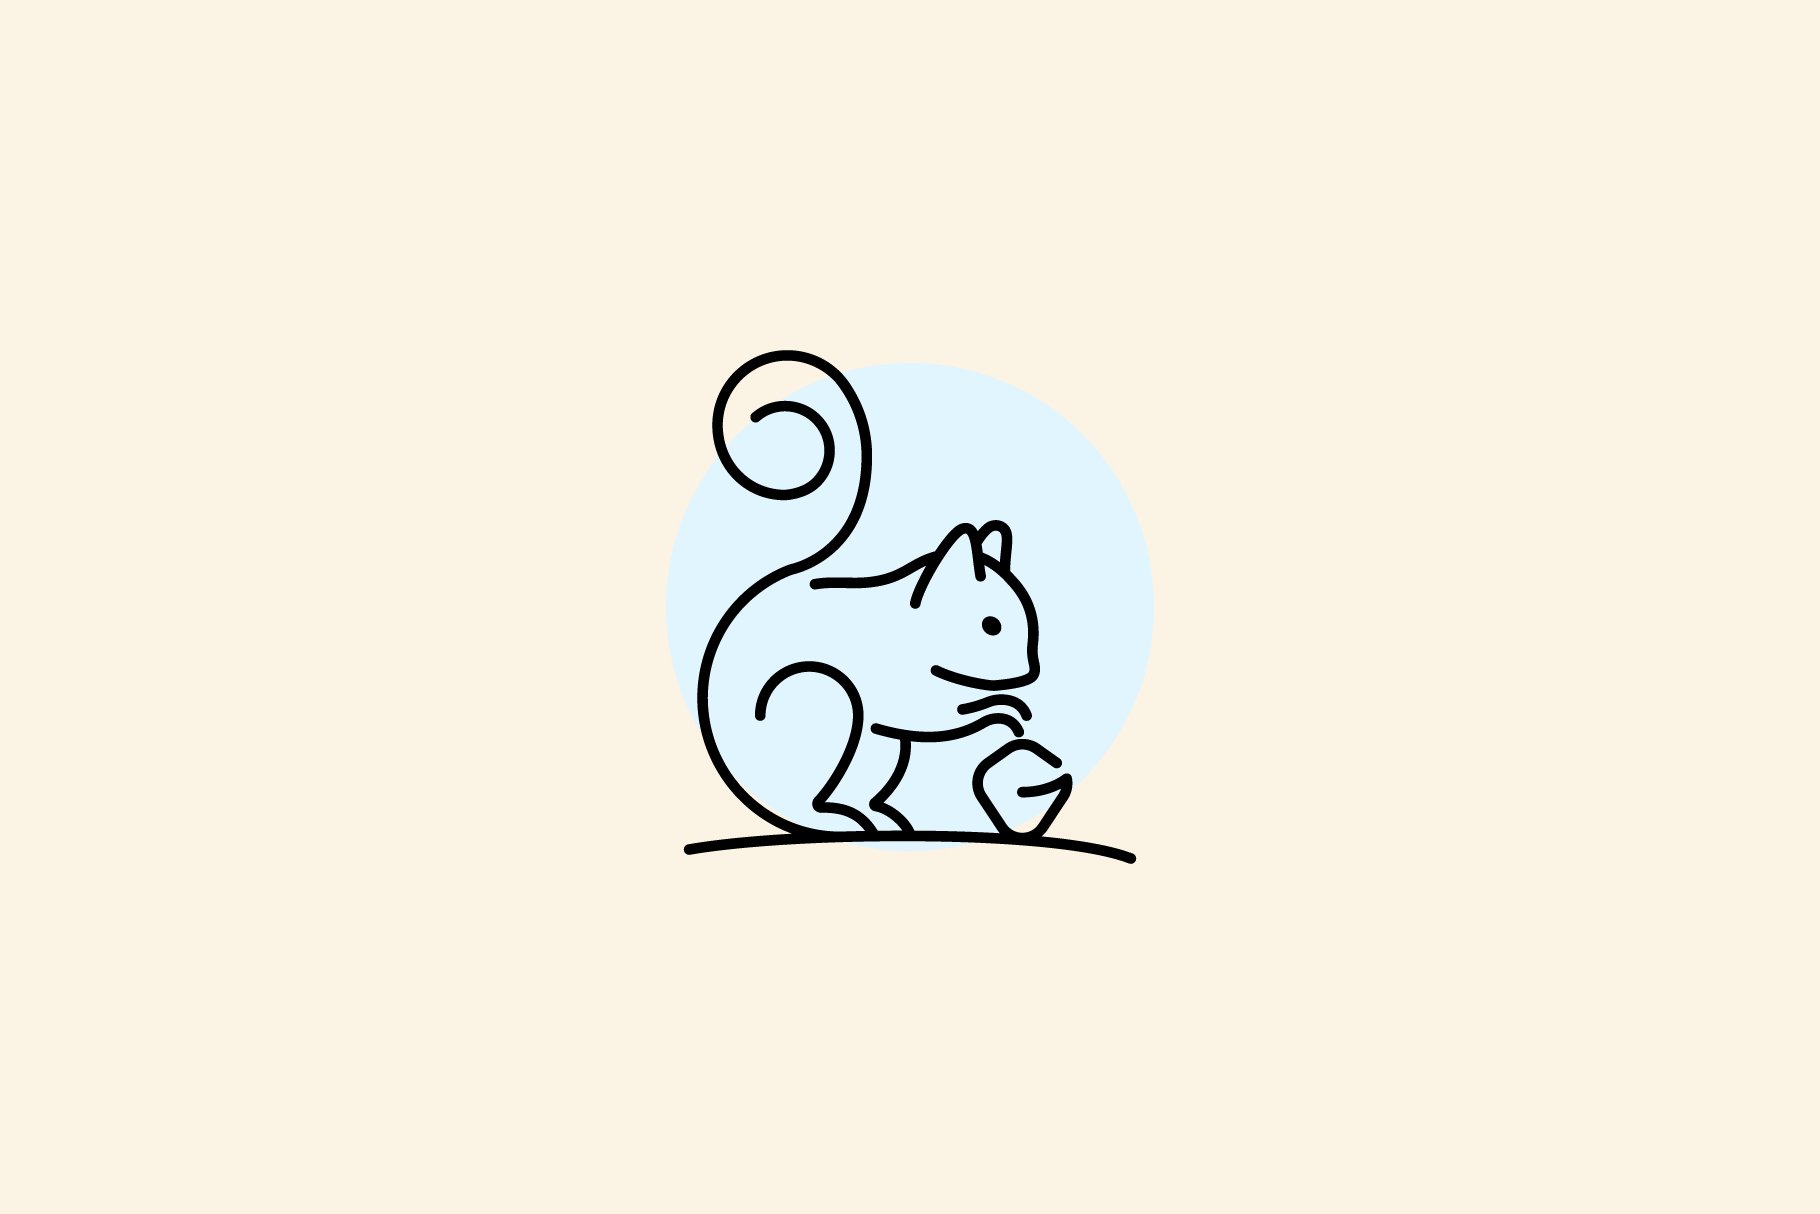 Squirrel Monoline Logo vector Design cover image.